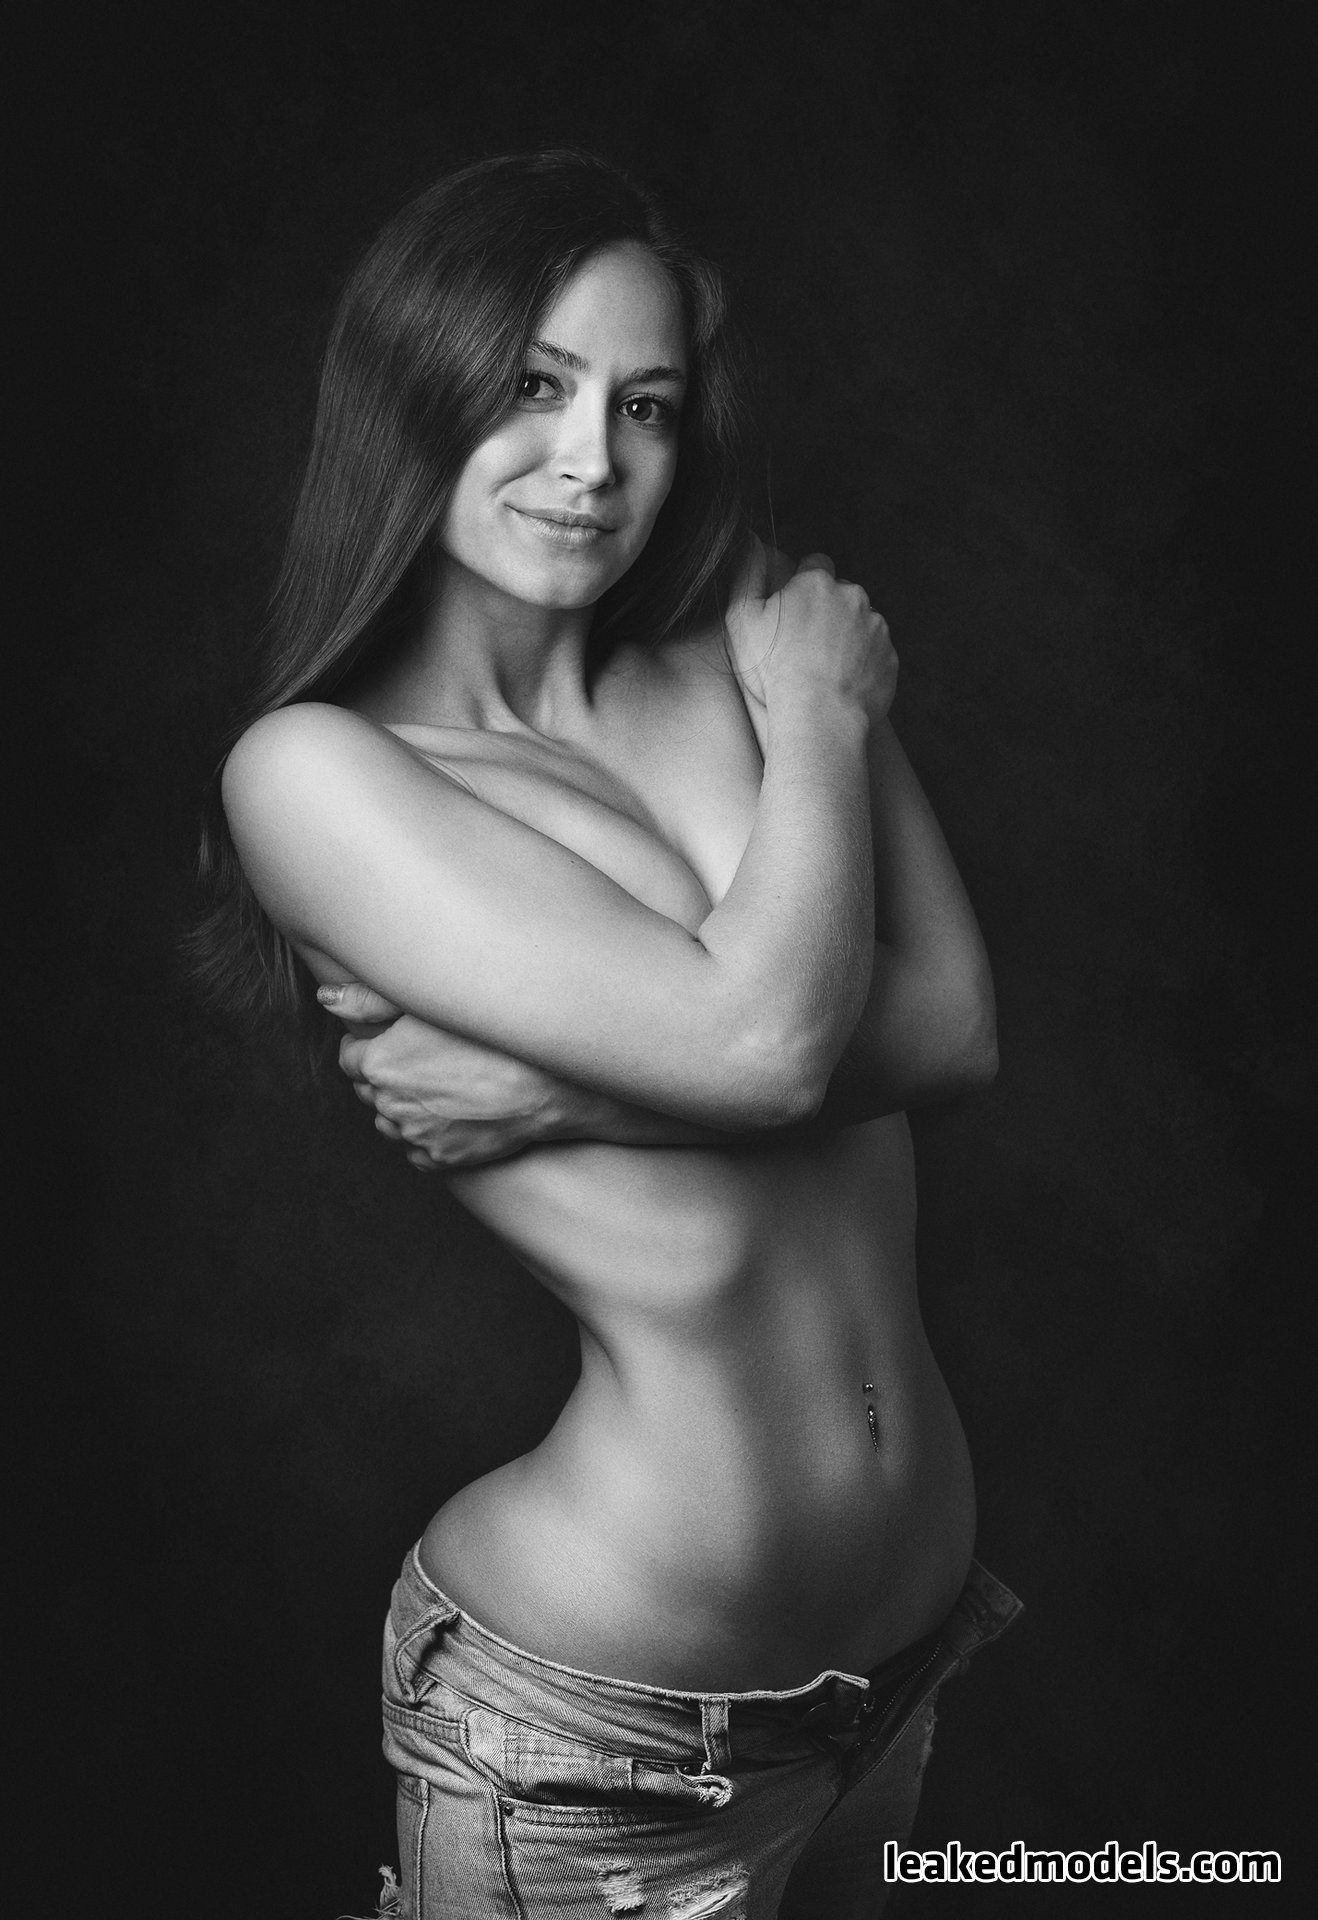 yulia sergeevna kalnitskaya leaked nude leakedmodels.com 0022 - Yulia Sergeevna Kalnitskaya – juli55555 Instagram Nude Leaks (25 Photos)